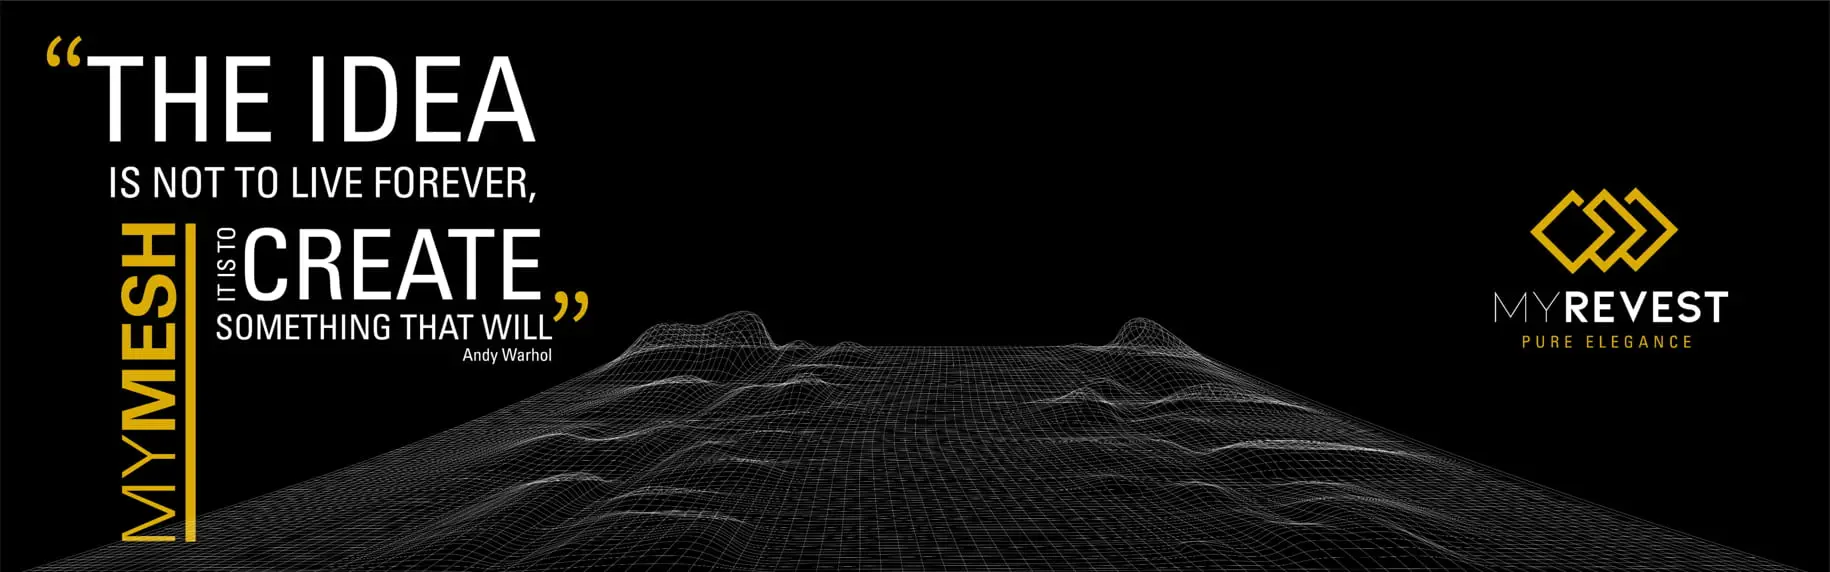 3D-ritning med ett utsträckt glasfibernät mot en svart bakgrund och med MyRevest-logotypen i övre delen